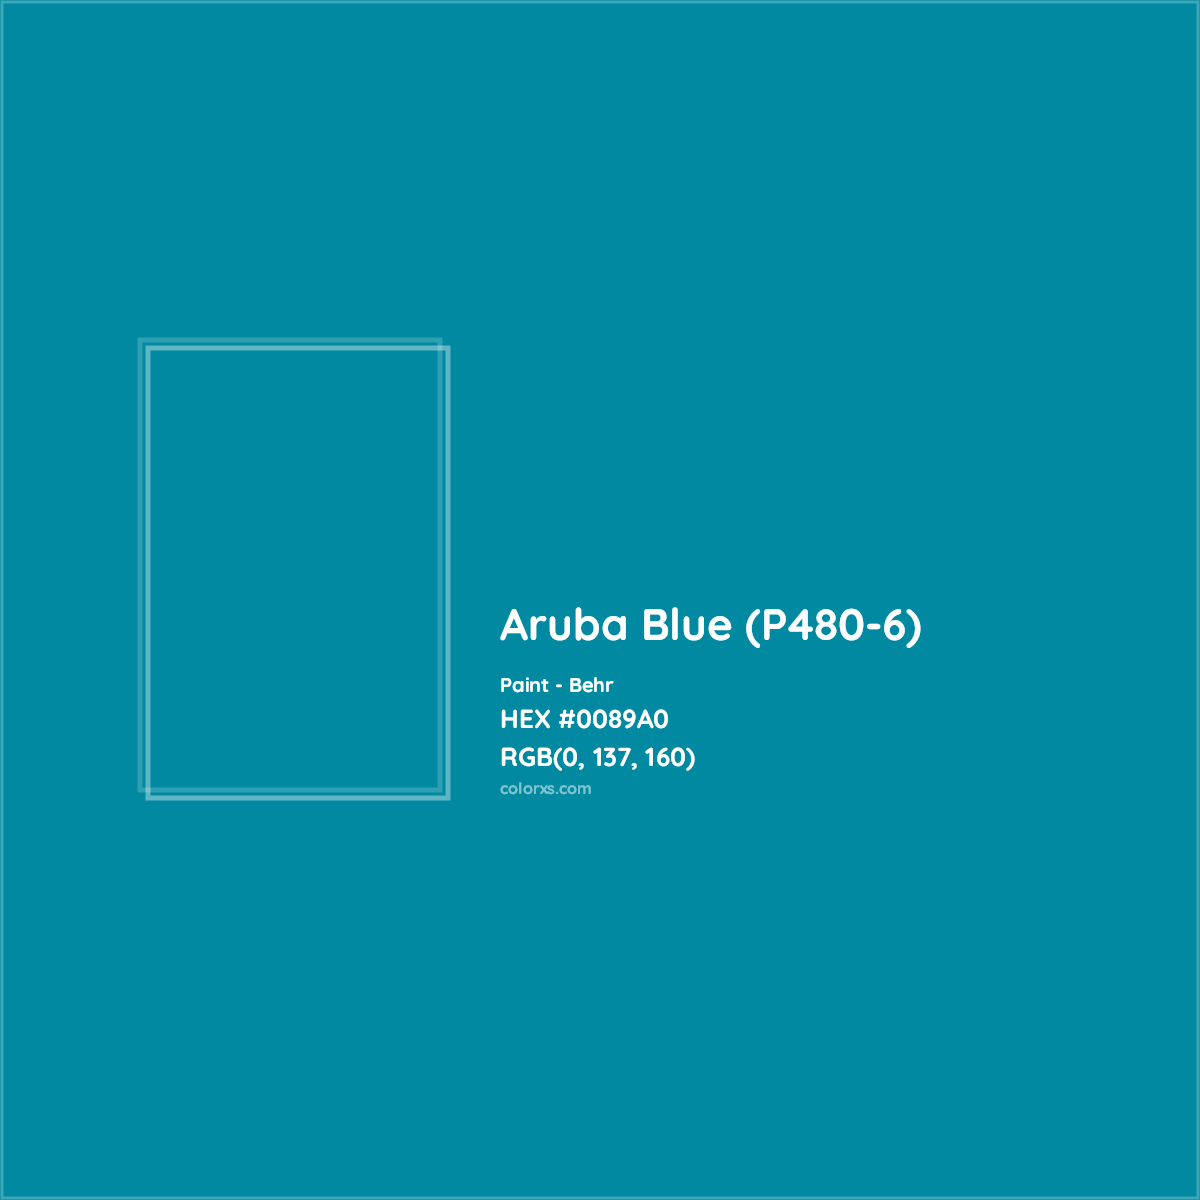 HEX #0089A0 Aruba Blue (P480-6) Paint Behr - Color Code